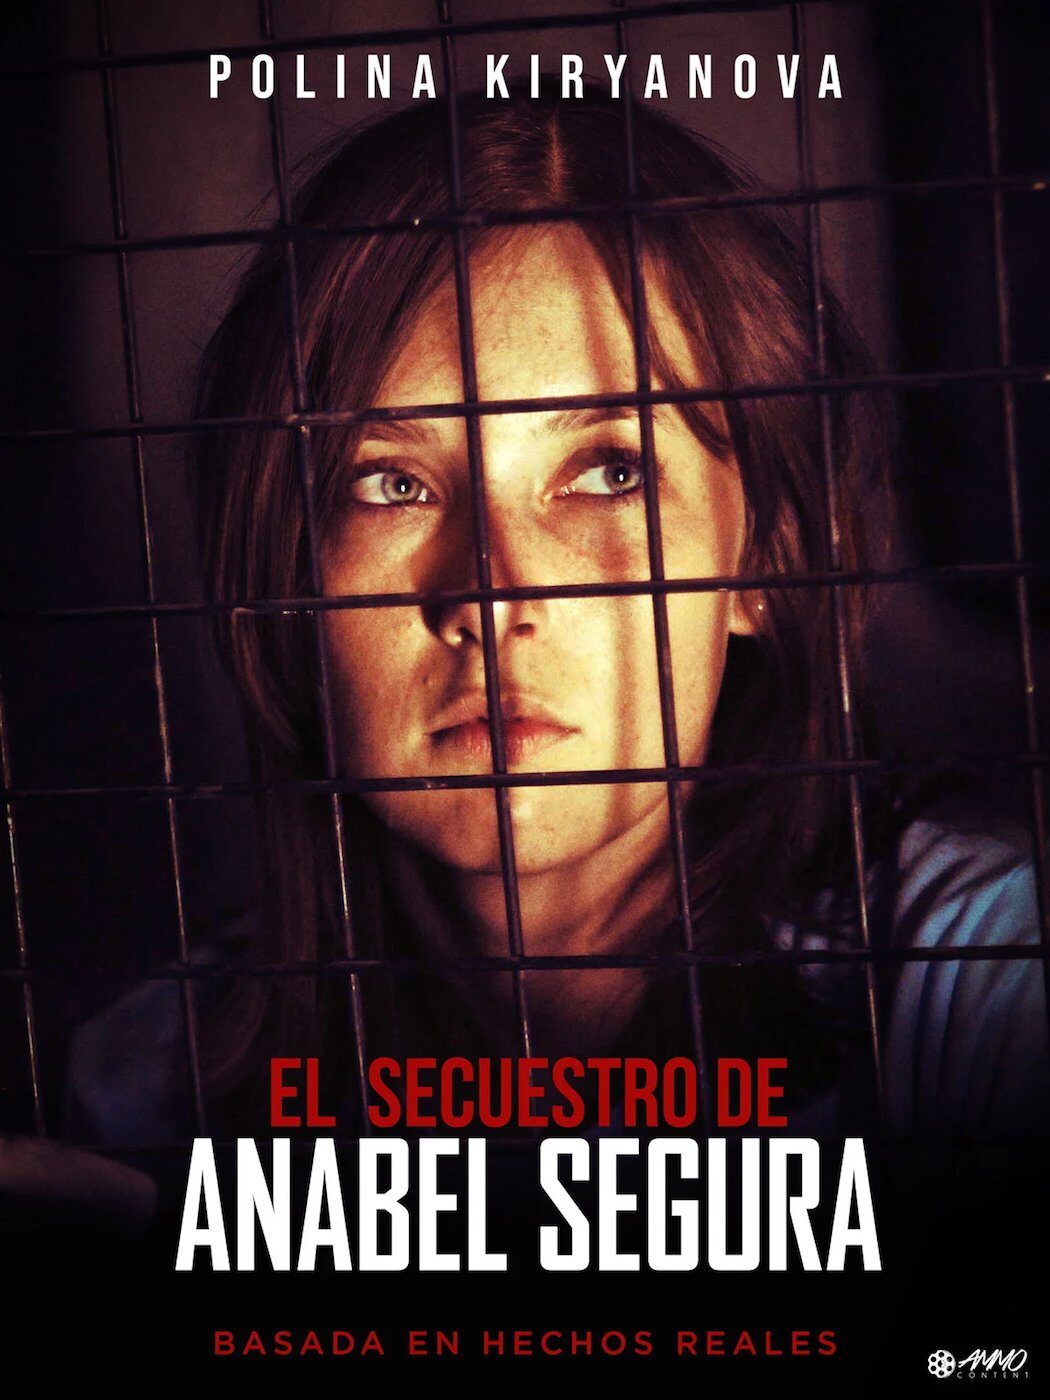 'El secuestro de Anabel' (Pedro Costa, 2010)